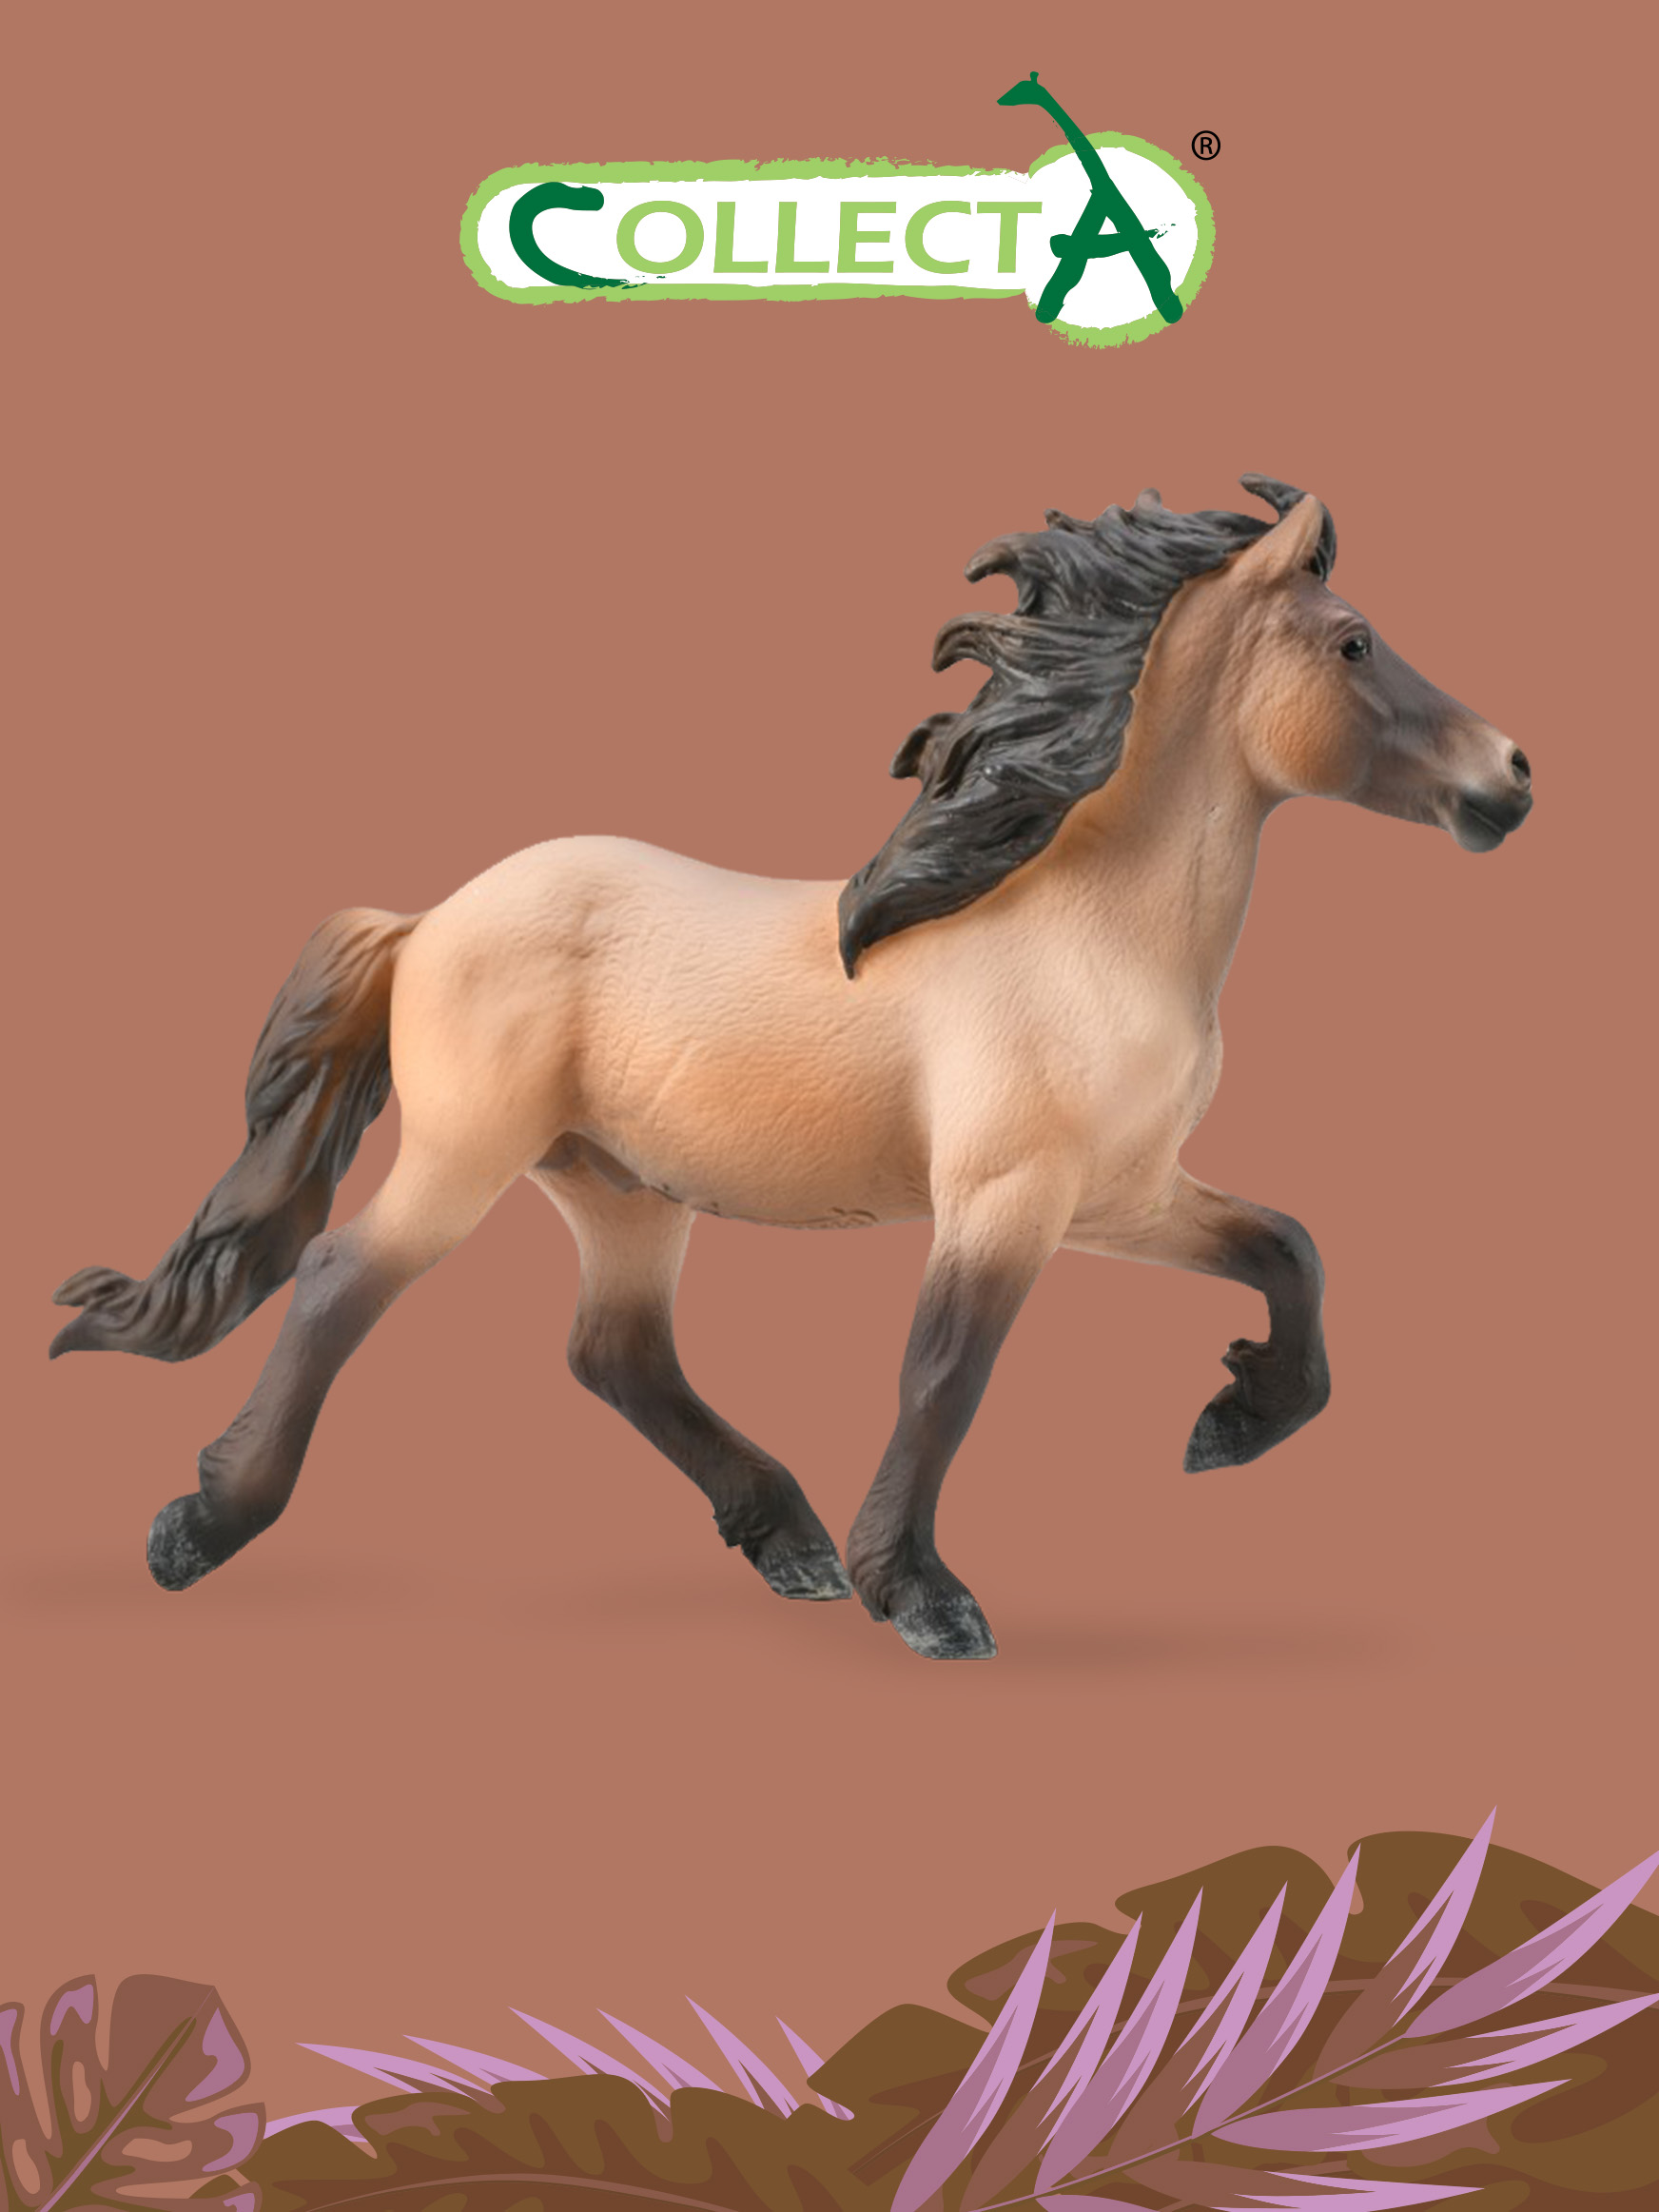 Фигурка Collecta животного Лошадь Исландский жеребец жеребец морган фигурка лошади